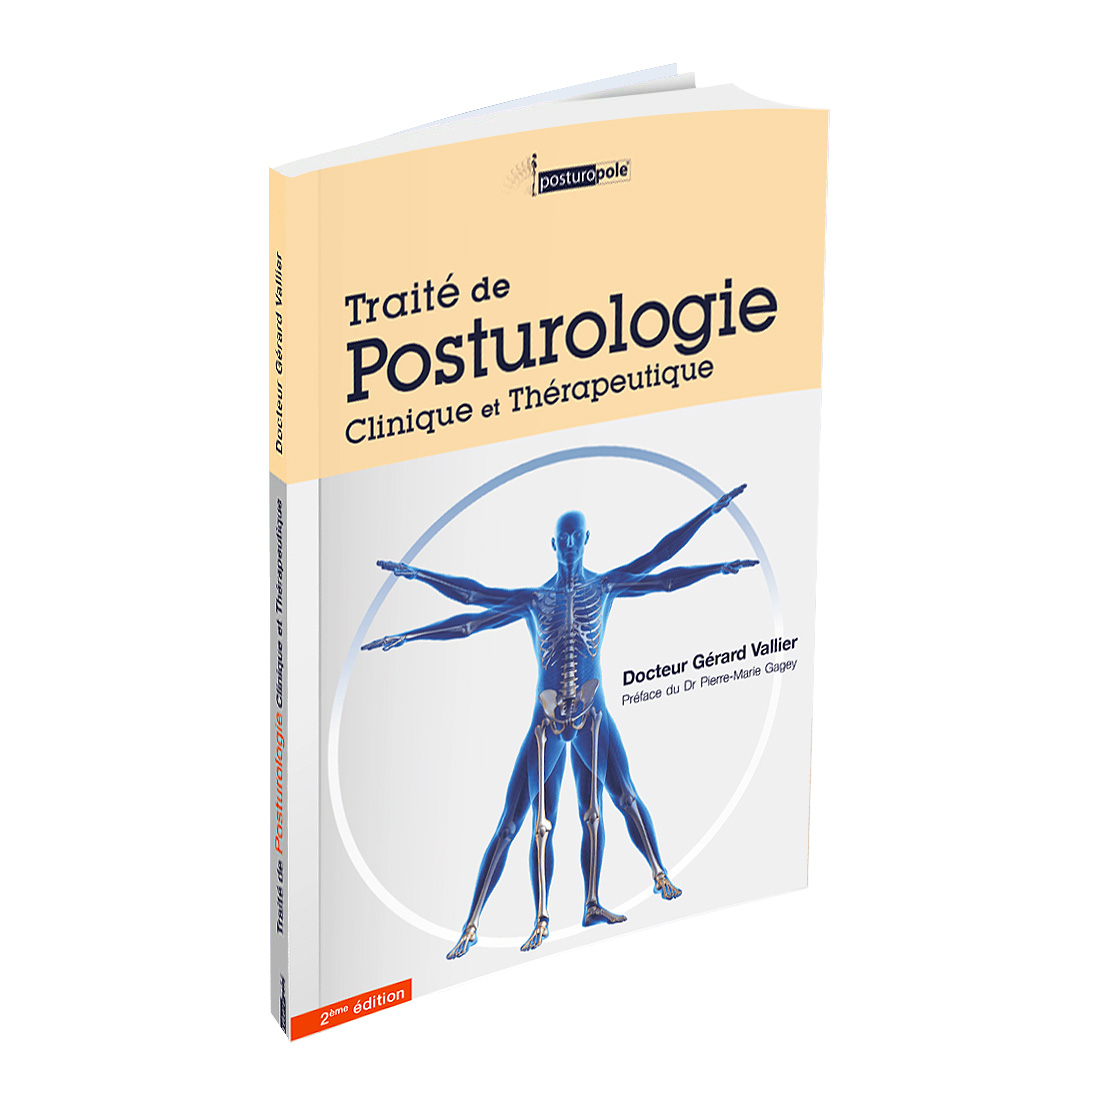 Traité de posturologie - Clinique et thérapeutique 2ème édition - Docteur Vallier